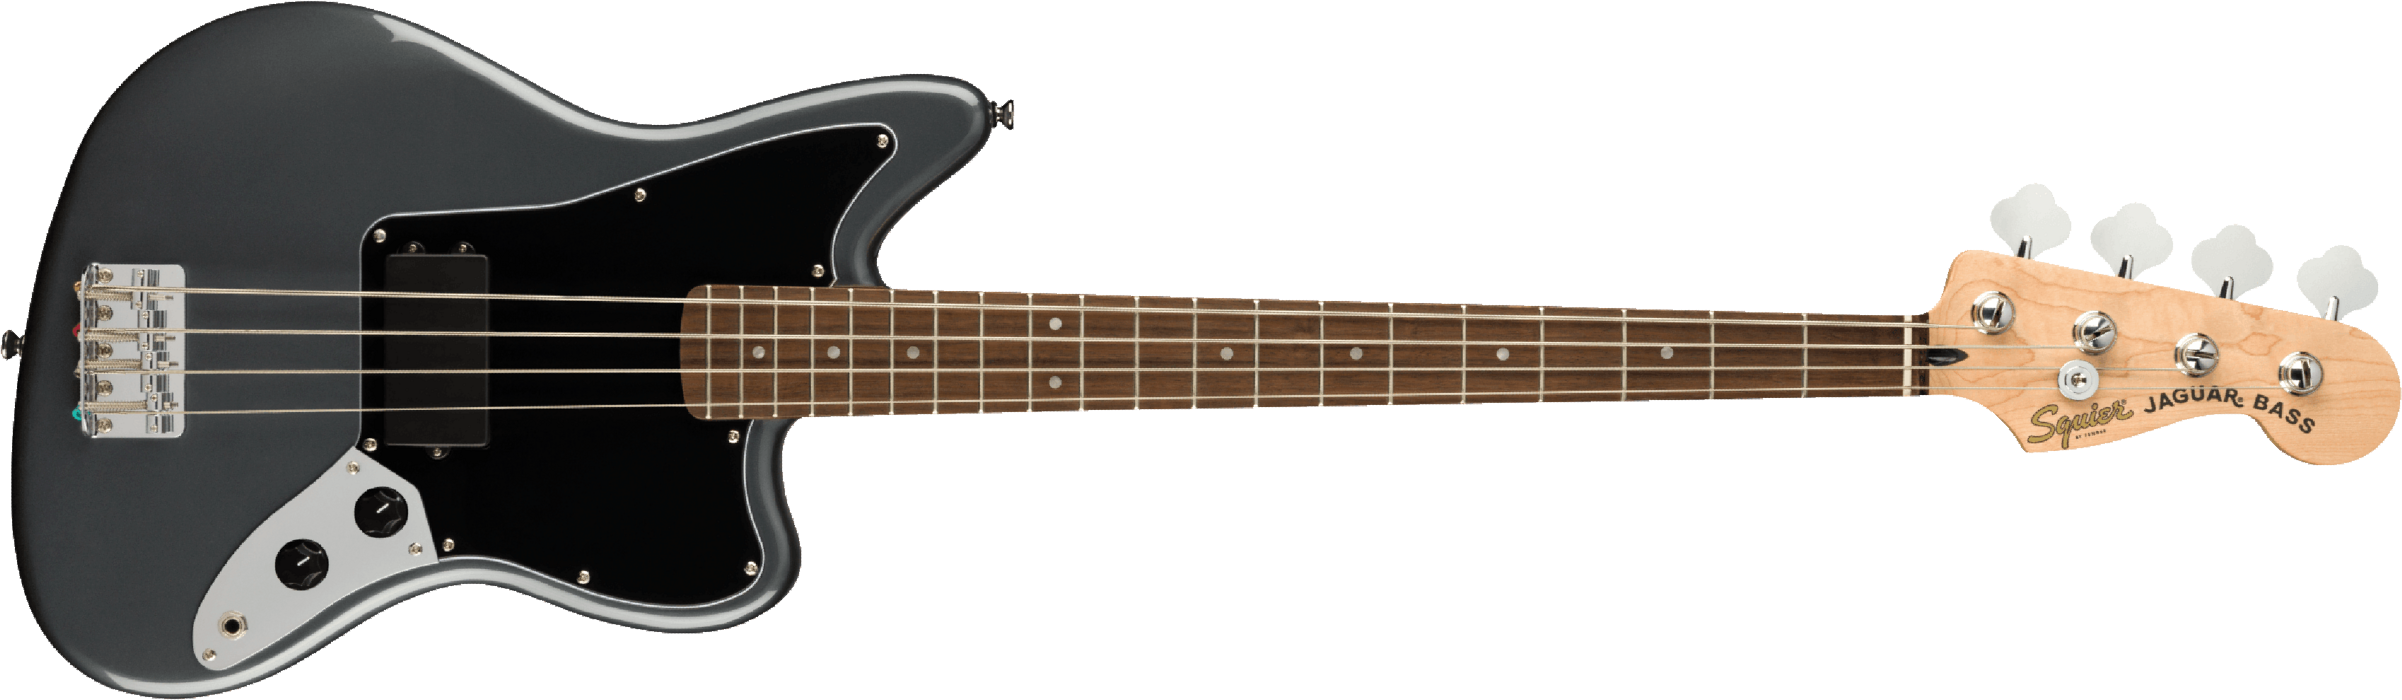 Squier Jaguar Bass Affinity 2021 Lau - Charcoal Frost Metallic - Basse Électrique Solid Body - Main picture